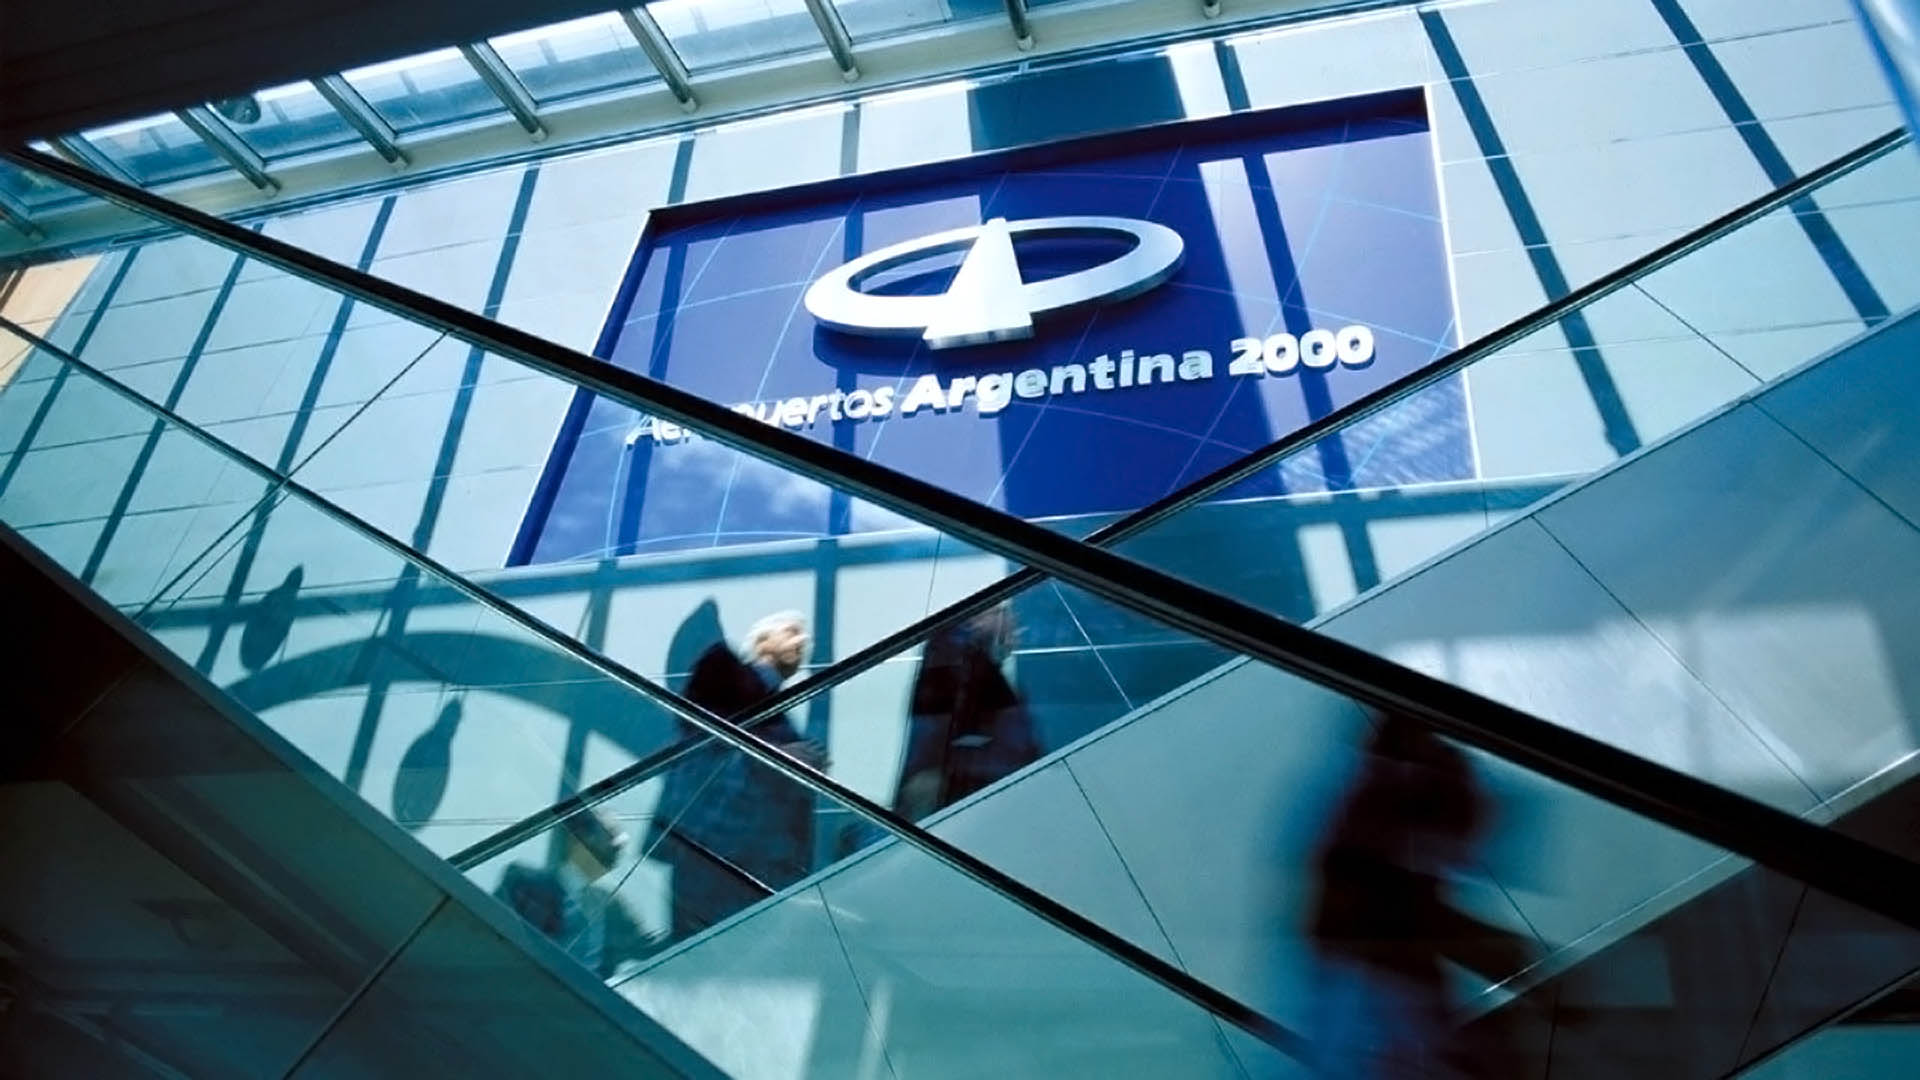 Aeropuertos Argentina 2000 y la Cruz Roja lanzan un Hub Humanitario Cono  Sur: lo anuncia Alberto Fernández - El Economista